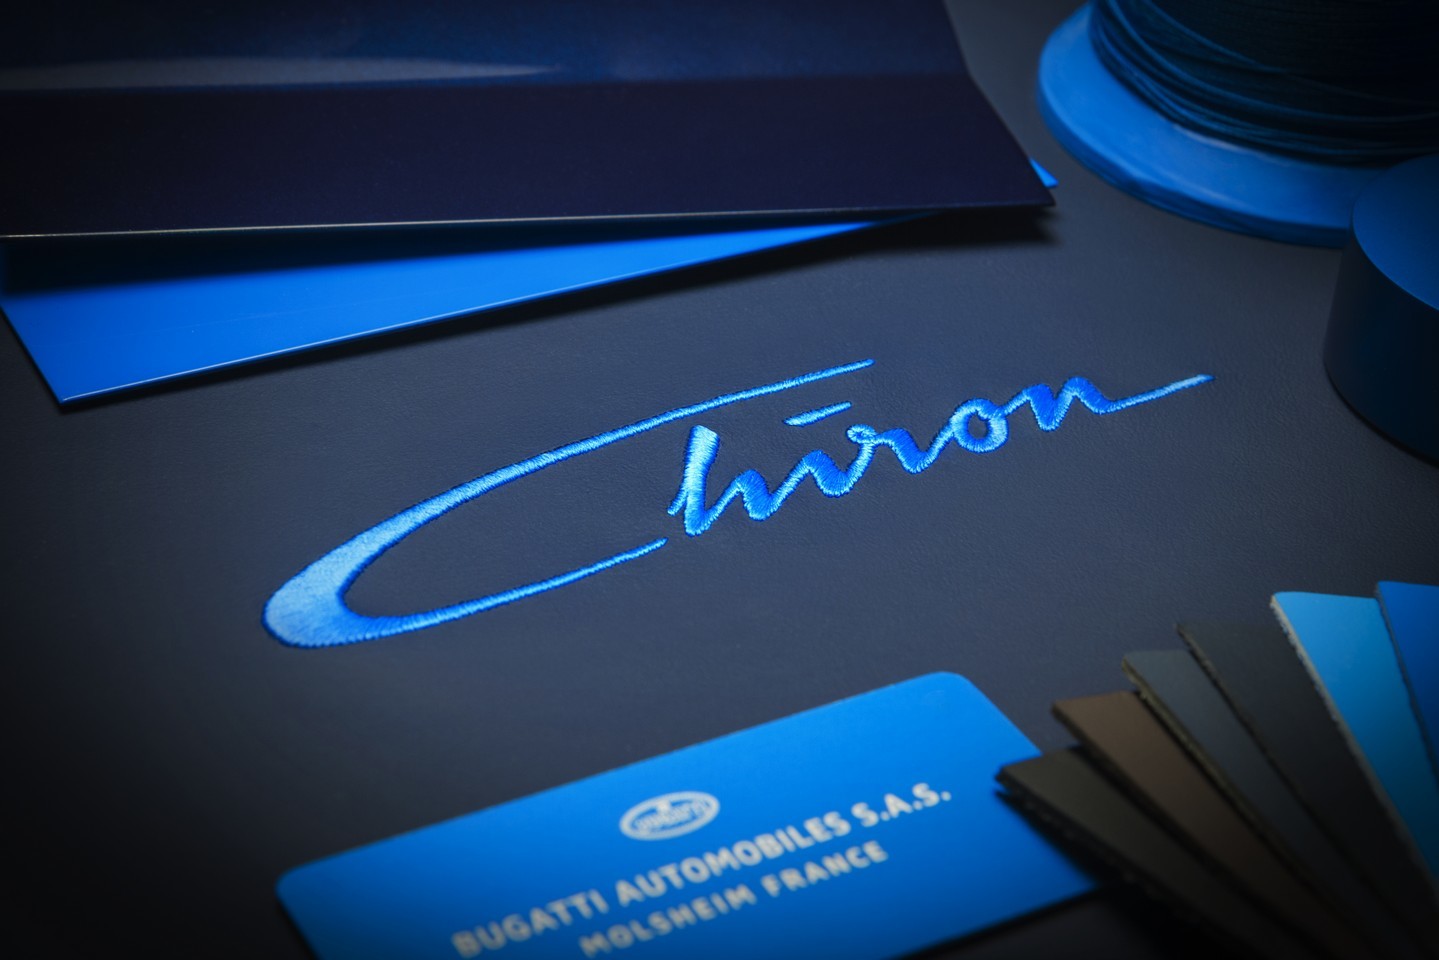 Sí, el sucesor del Bugatti Veyron se llamará Chiron, y tendrá ¡¡1500 CV!!